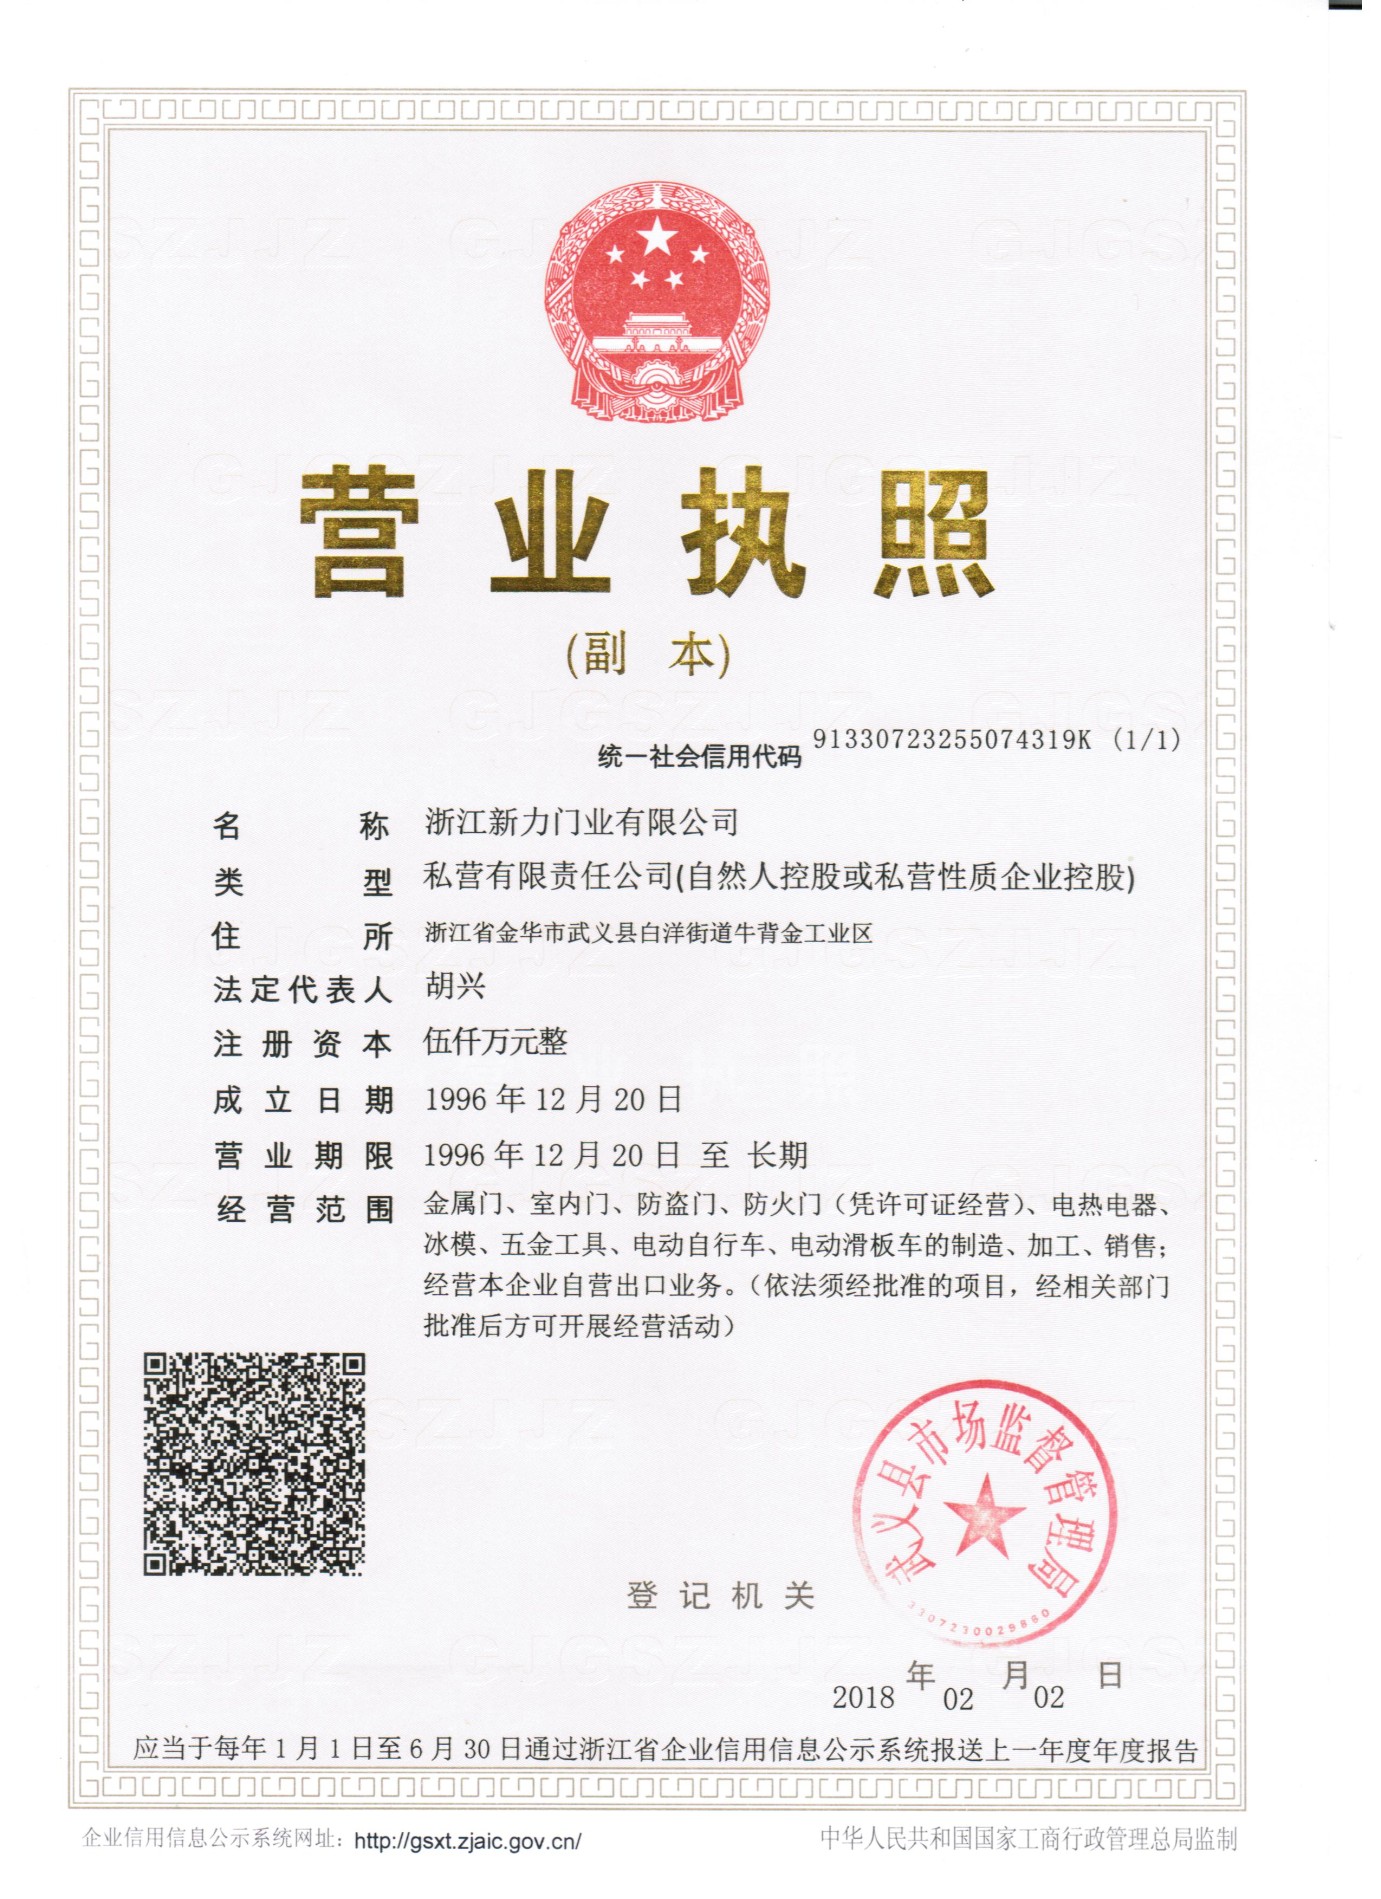 Licenza aziendale di Xinli Group